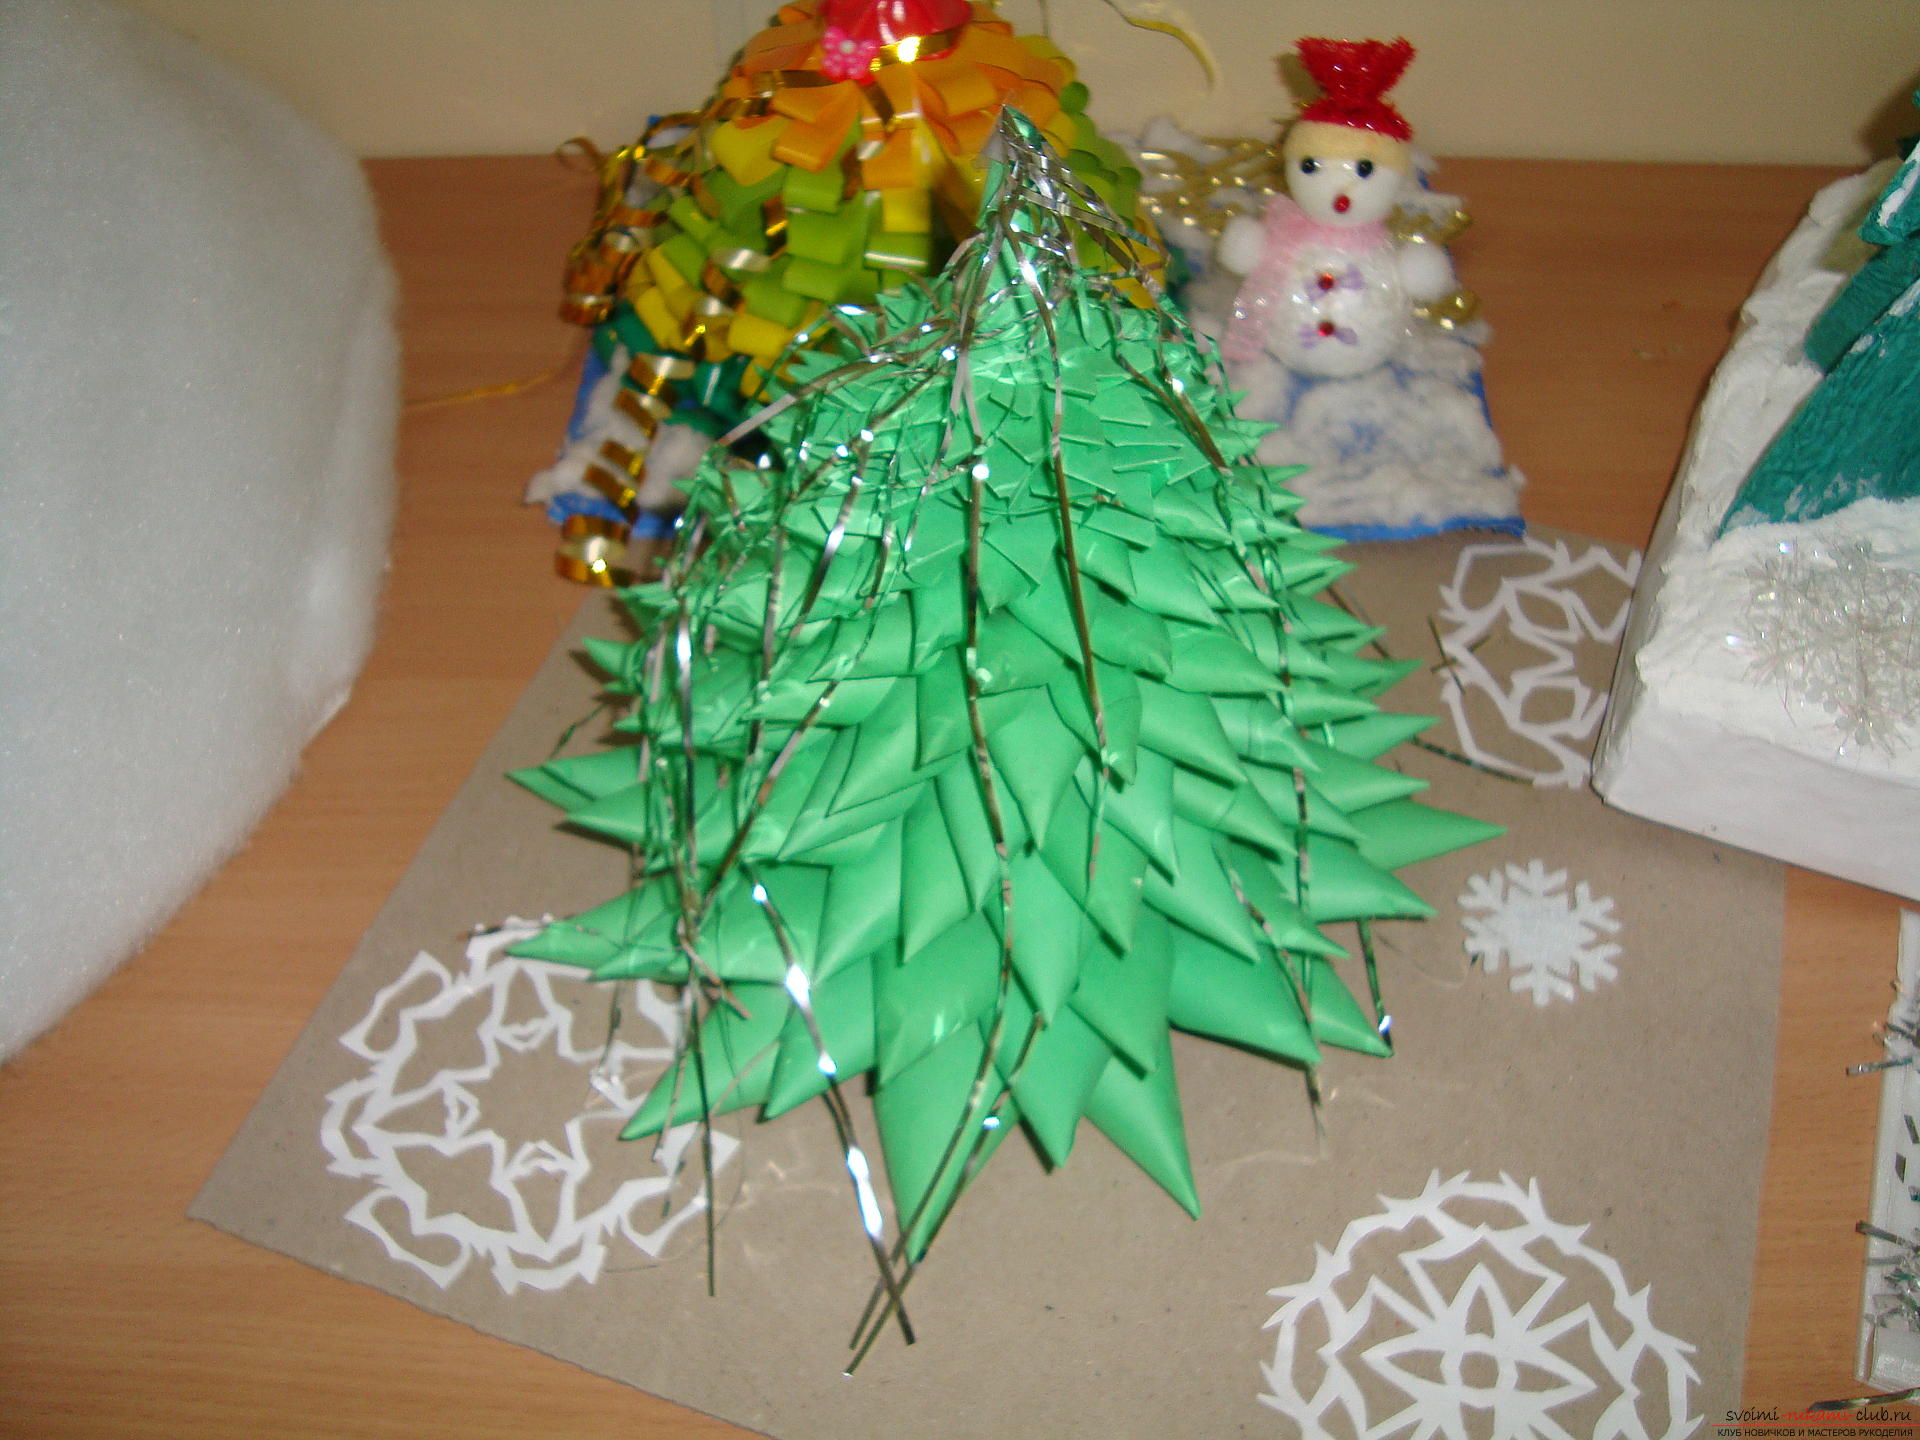 Het idee om zelf een heldere kerstboom van karton te maken